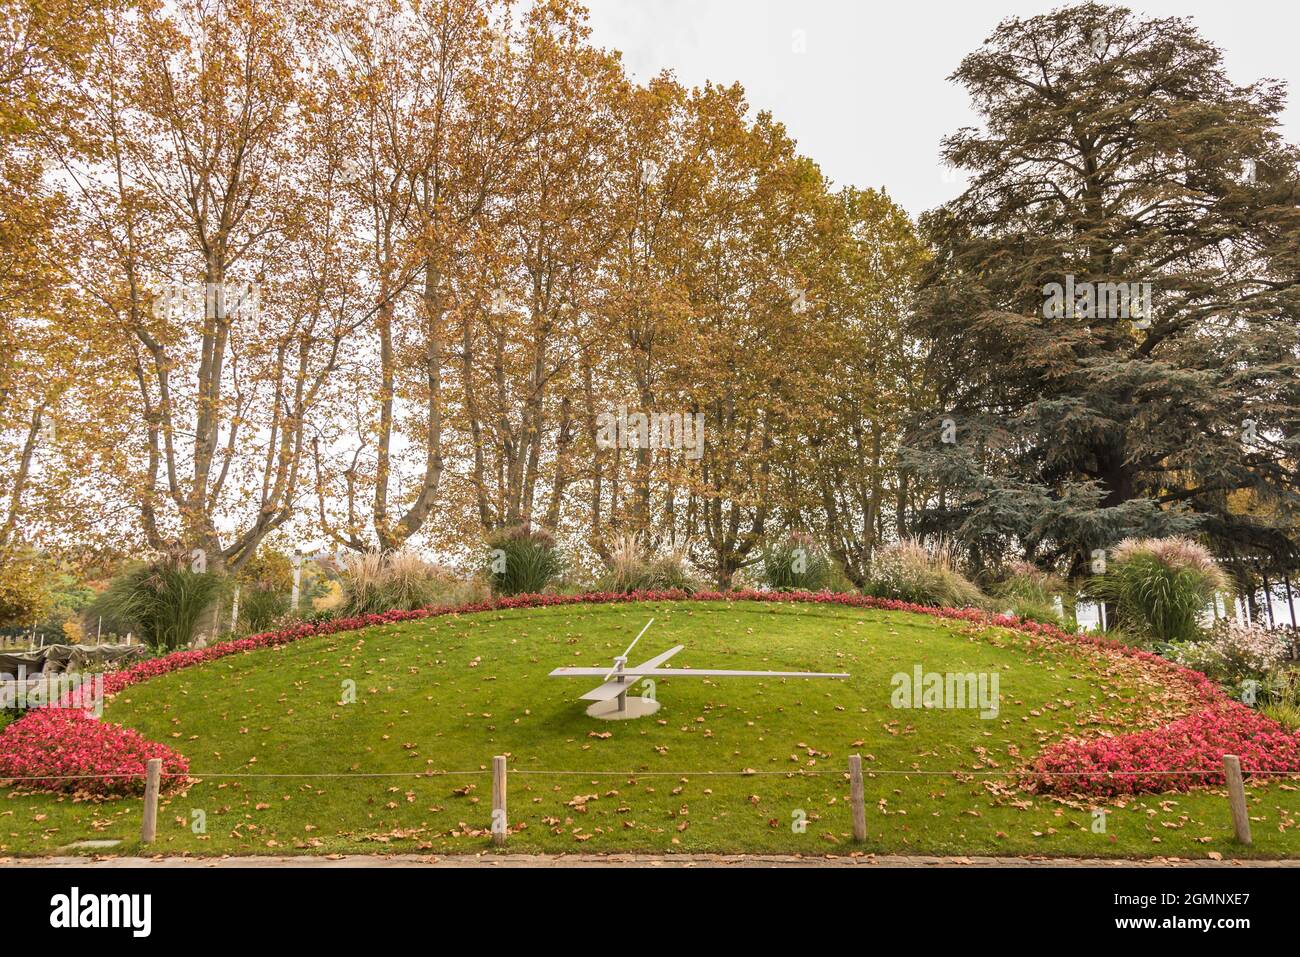 Une horloge florale sur la pelouse sur un parc avec de nombreux arbres autour de jour. Lausanne, Suisse Banque D'Images